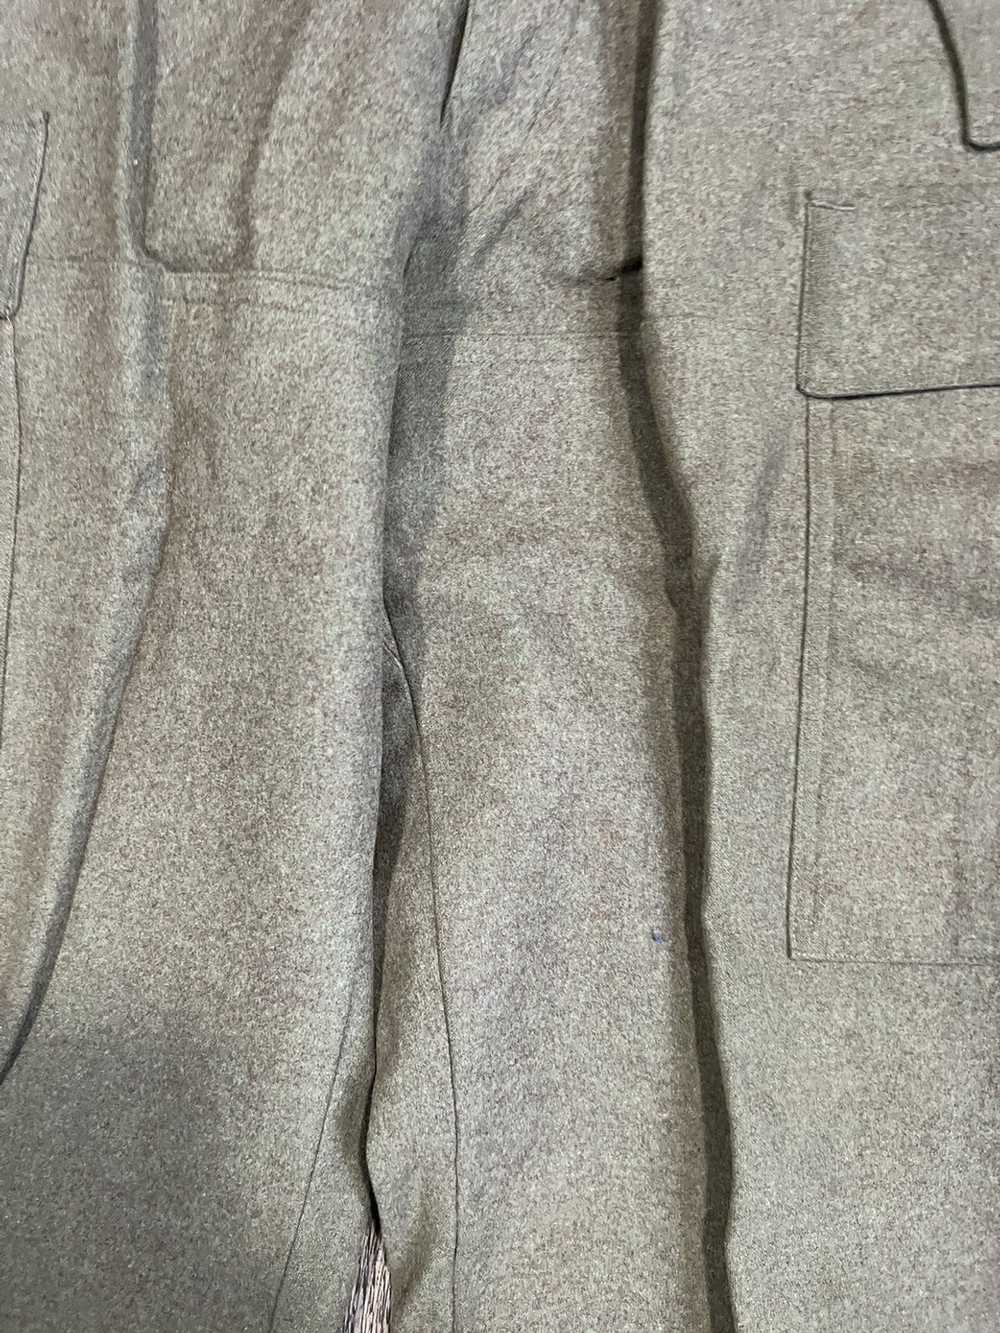 Vintage Vintage Army Wool Pants - image 4